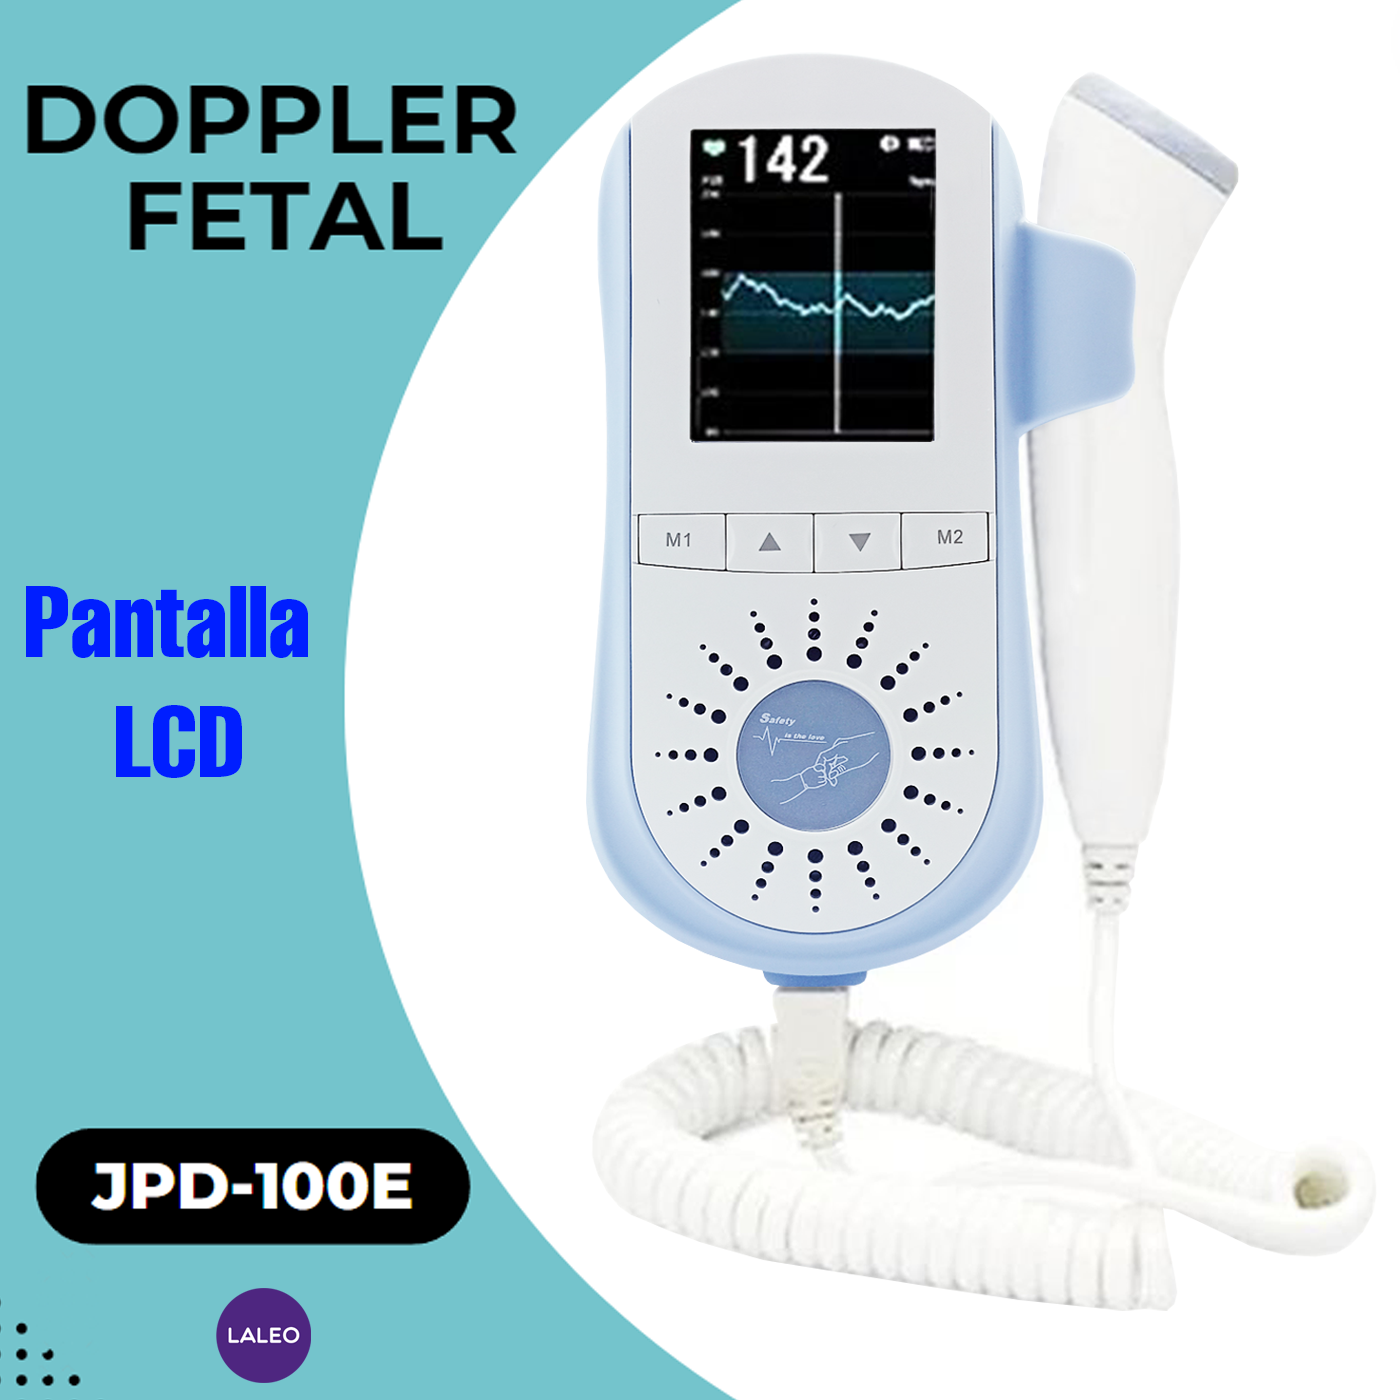 Doppler Fetal JPD-100E Recargable